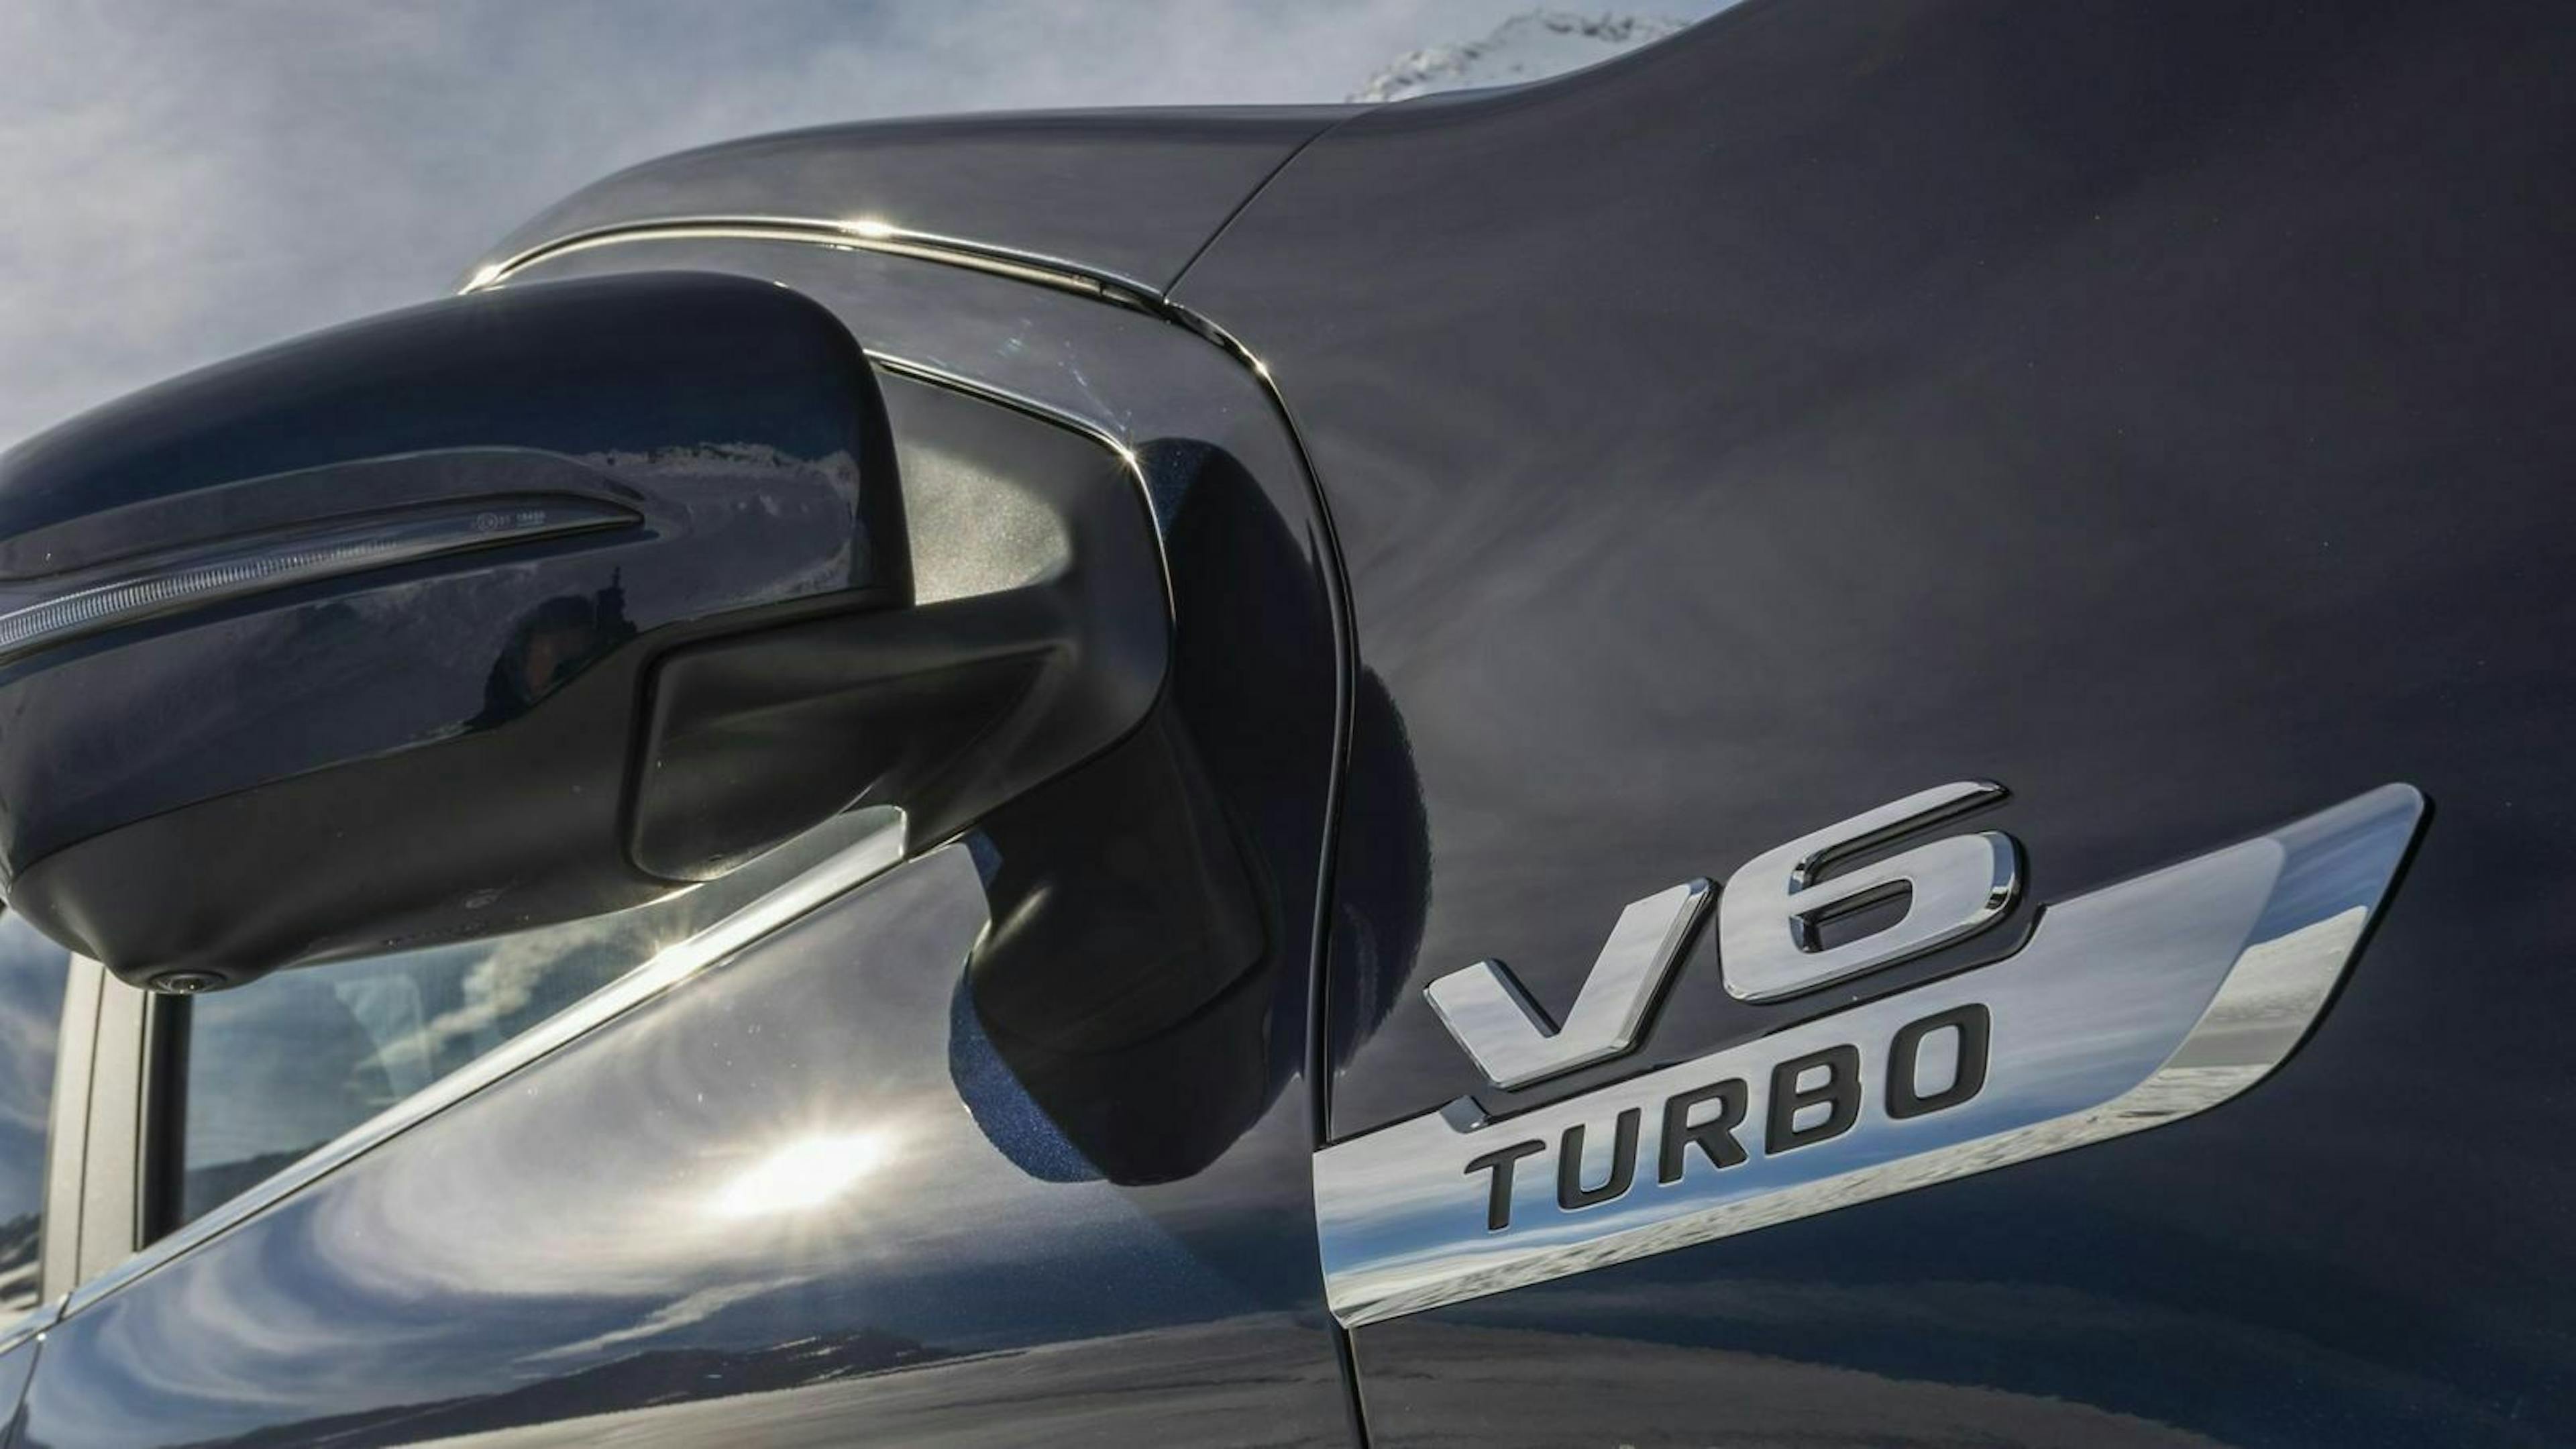 Zu sehen ist ein silberner Schriftzug " V6 Turbo" an der Außenseite der Mercedes X-Klasse